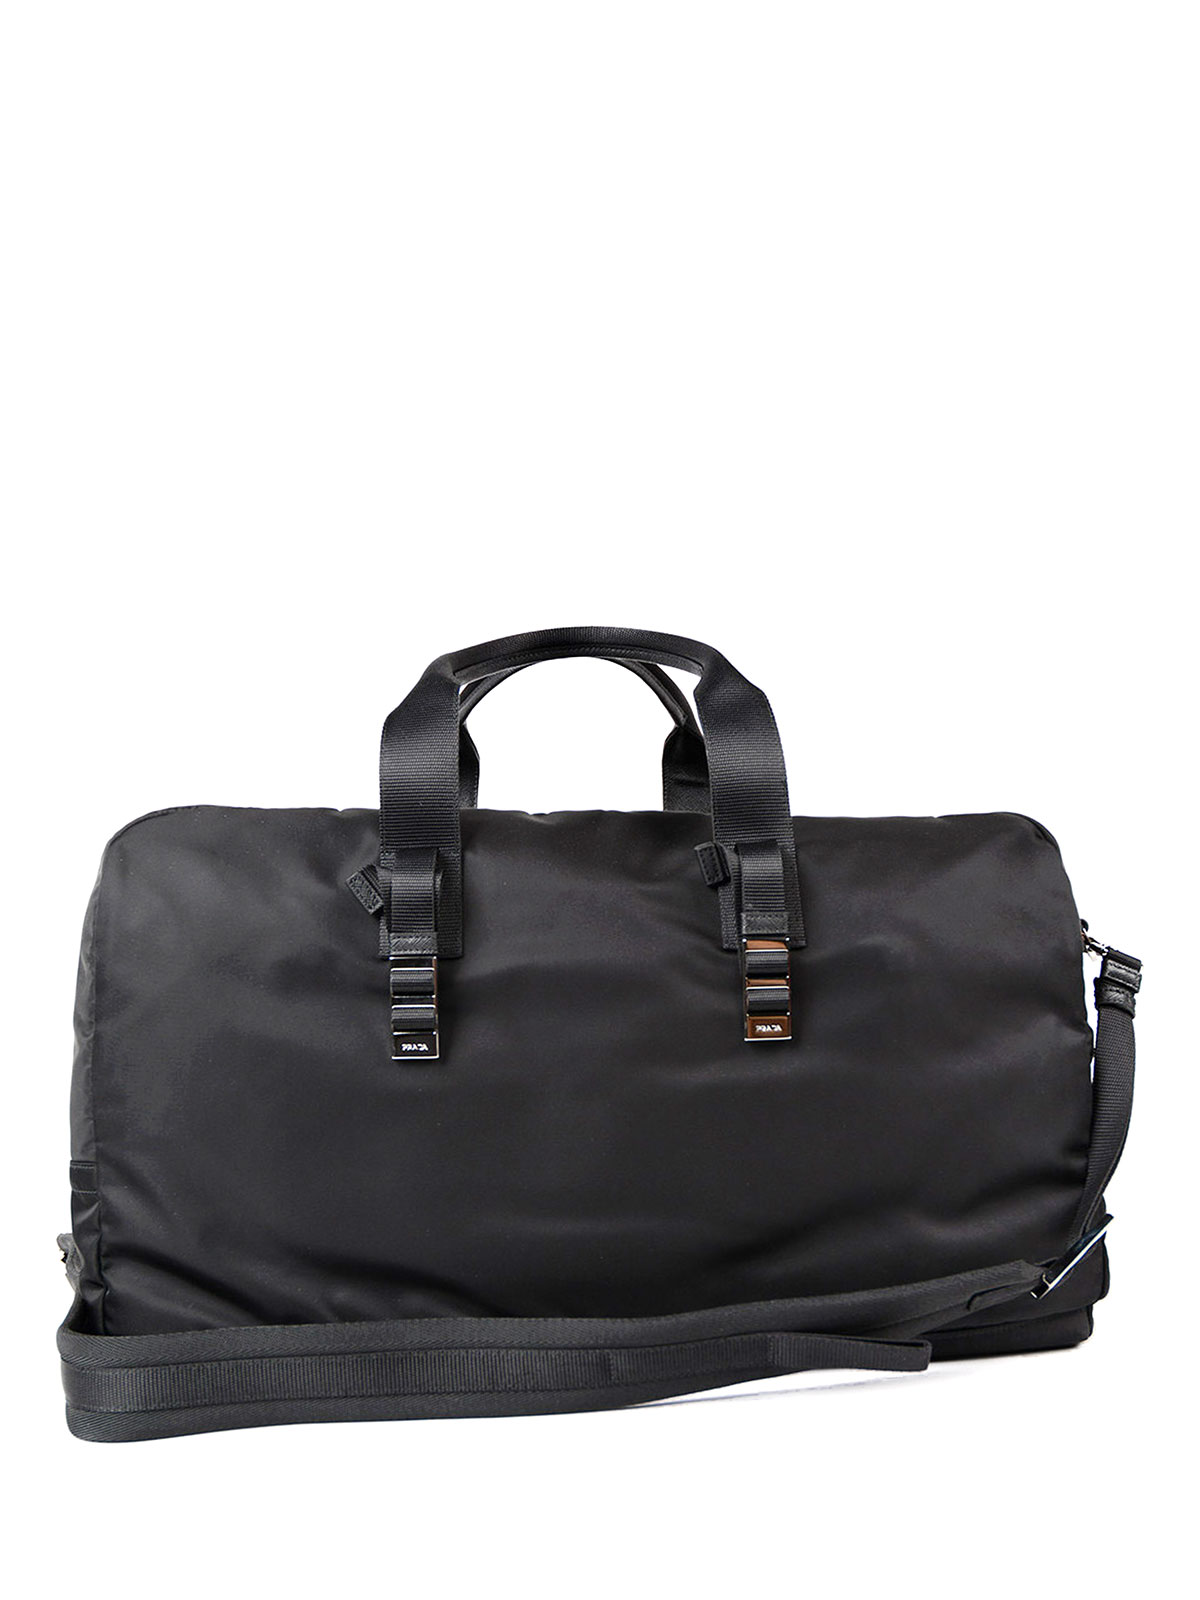 Luggage & Travel bags Prada - Travel nylon duffle bag - 2VC006973002